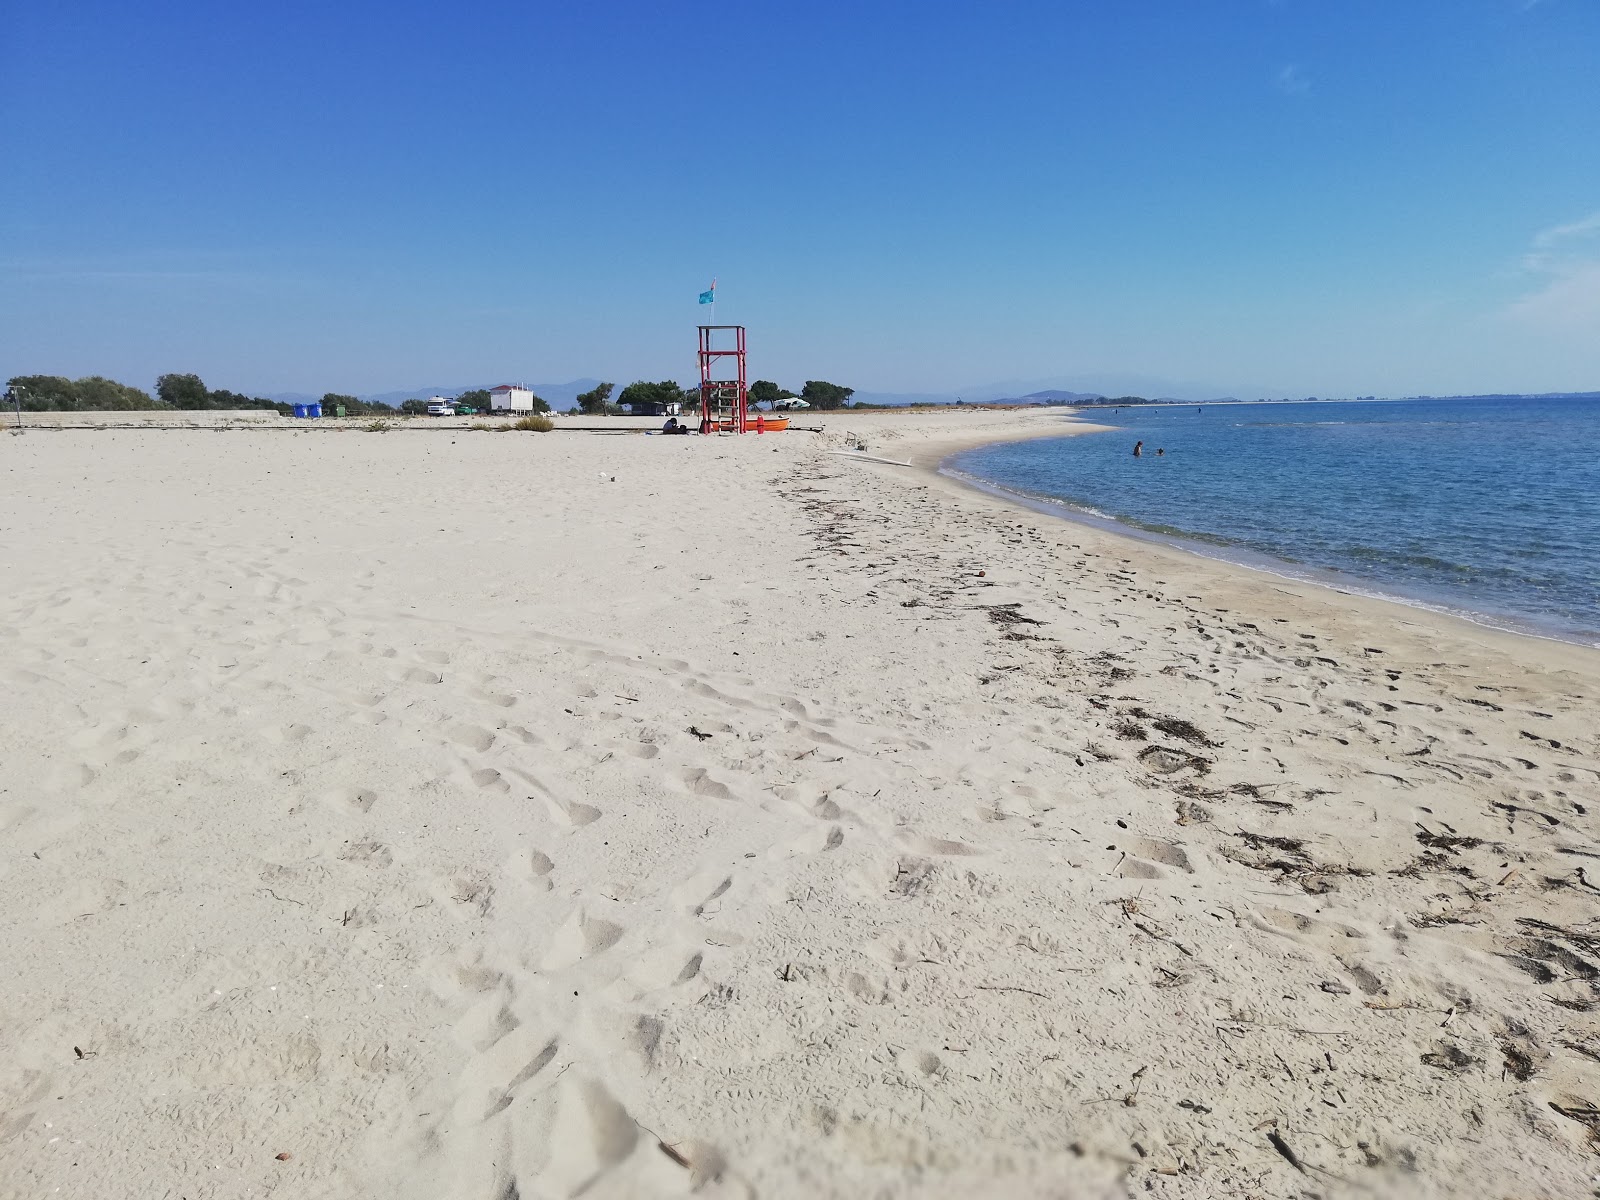 Zdjęcie Erasmio beach z powierzchnią turkusowa czysta woda